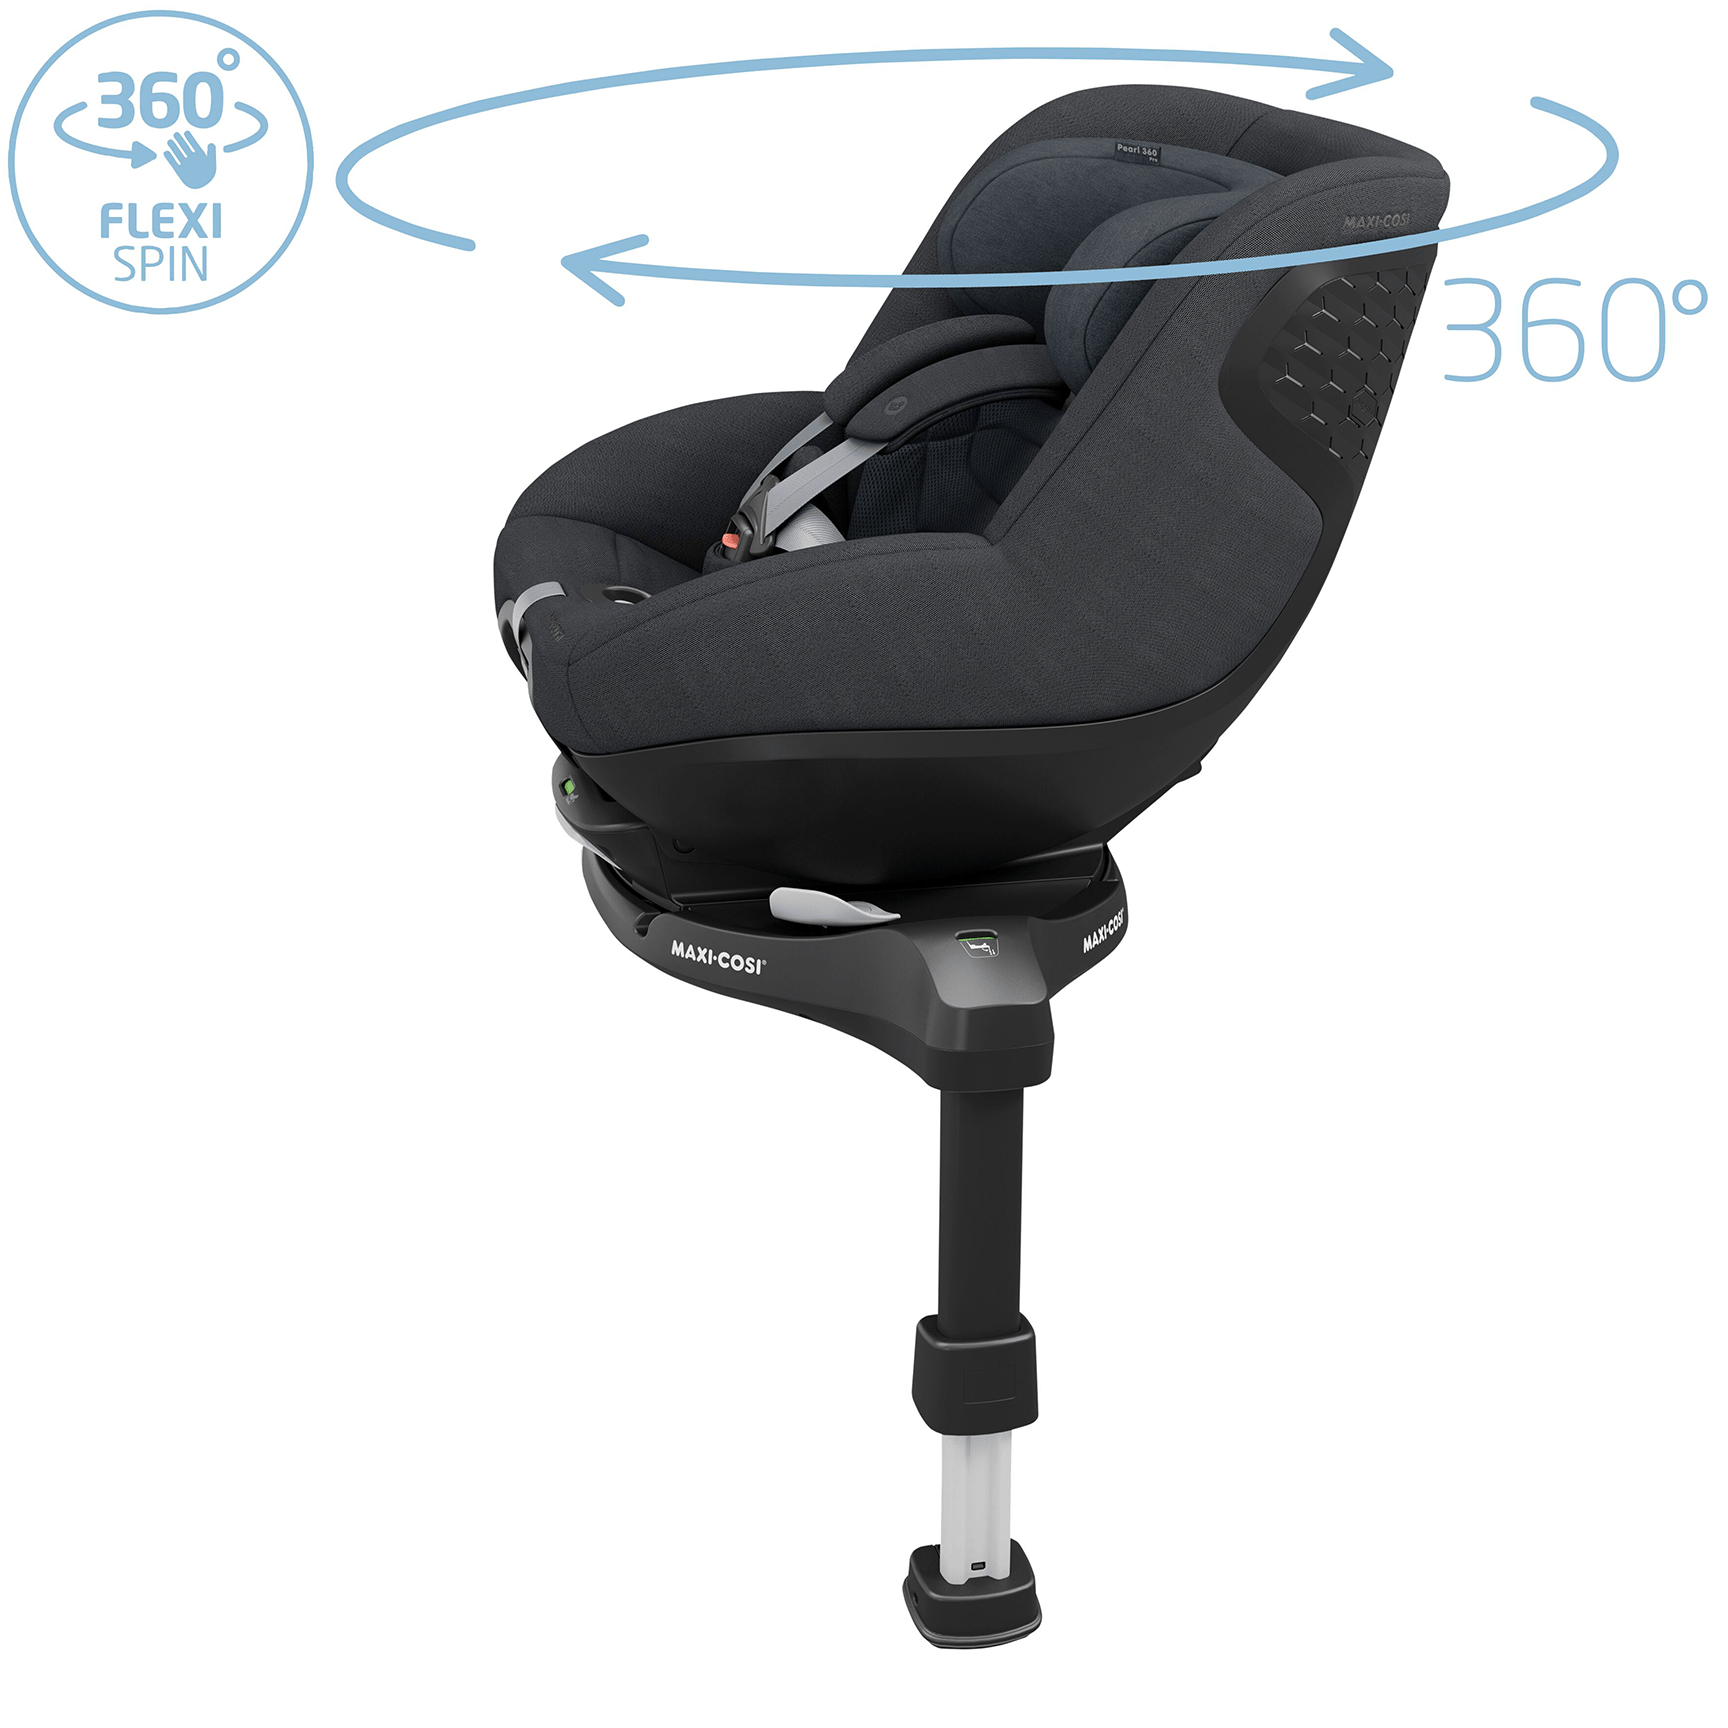 Maxi-Cosi baby car seats Maxi-Cosi Pearl 360 Pro - Authentic Graphite 8053550110